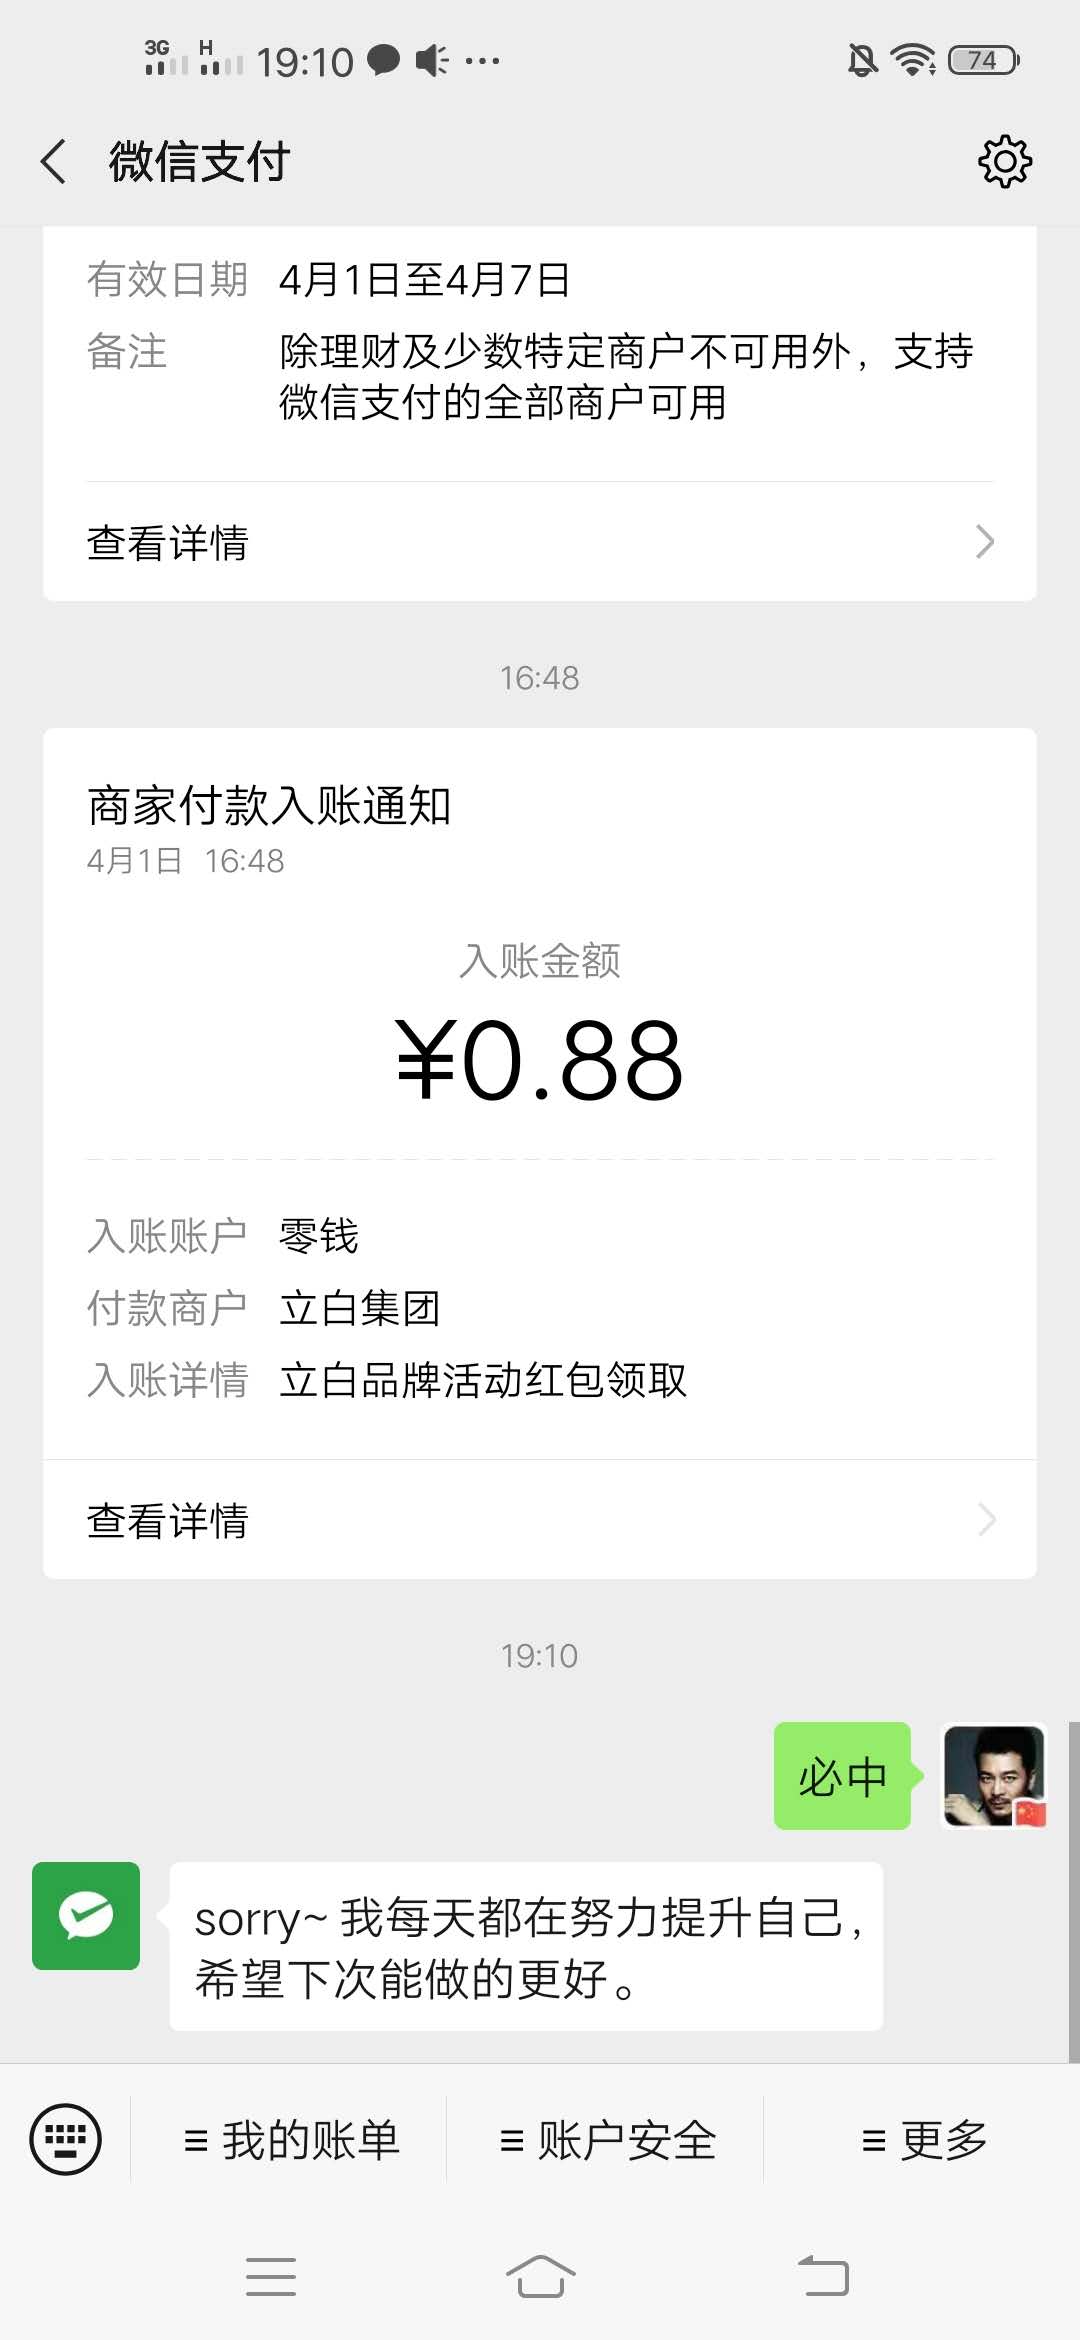 立白立乐惠免费送微信现金红包 最少可以撸0.88元零用钱